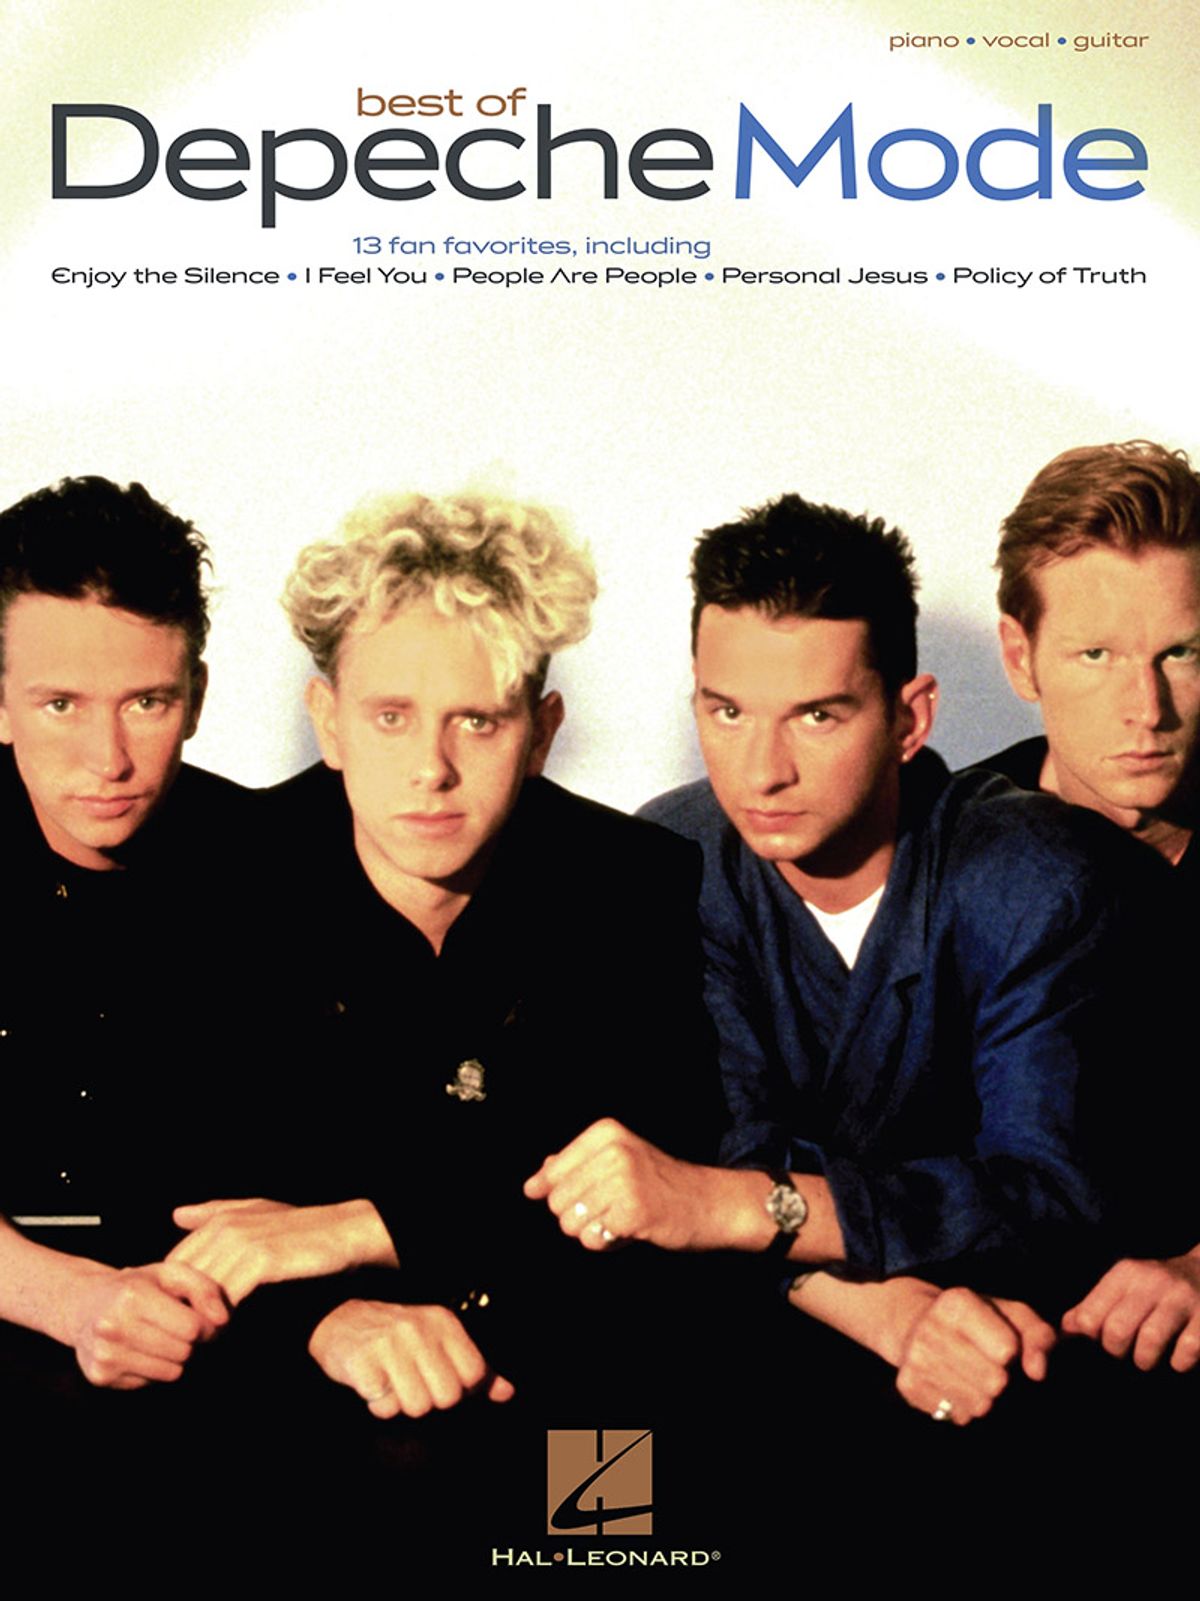 best-of-depeche-mode-songbook.jpg